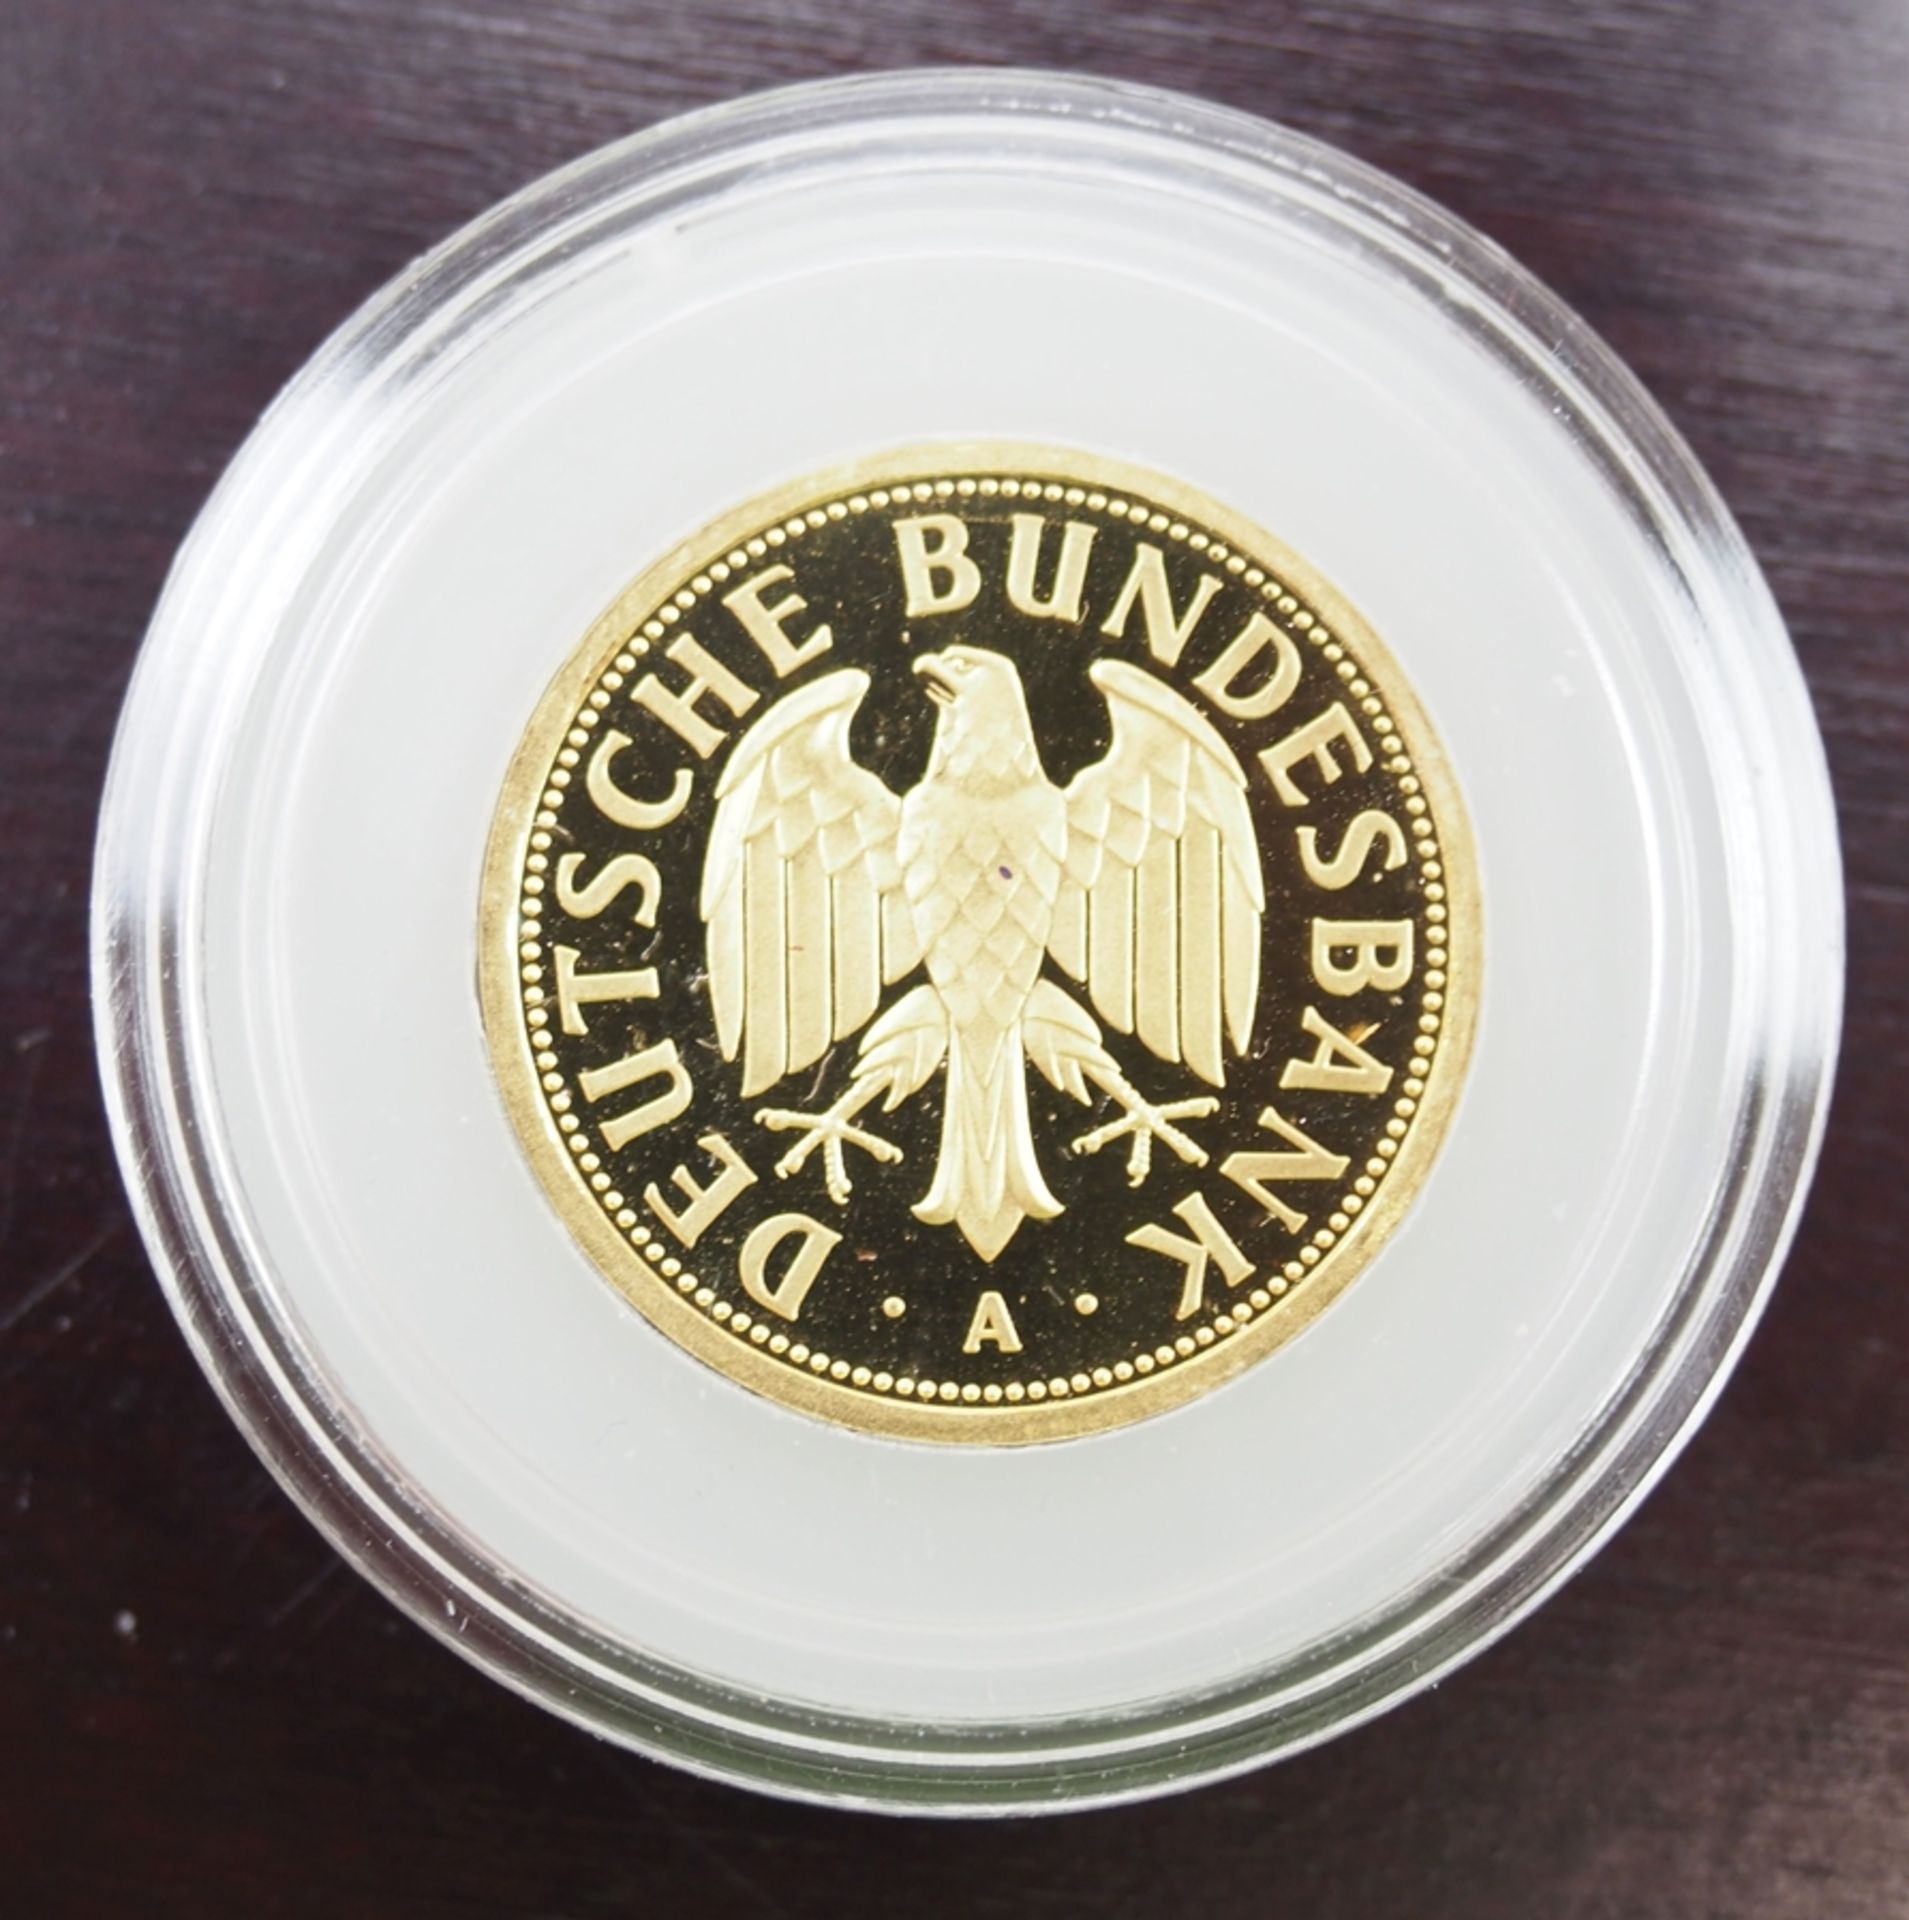 BRD: 1 Deutsche Mark GOLD 2001. - Bild 2 aus 2